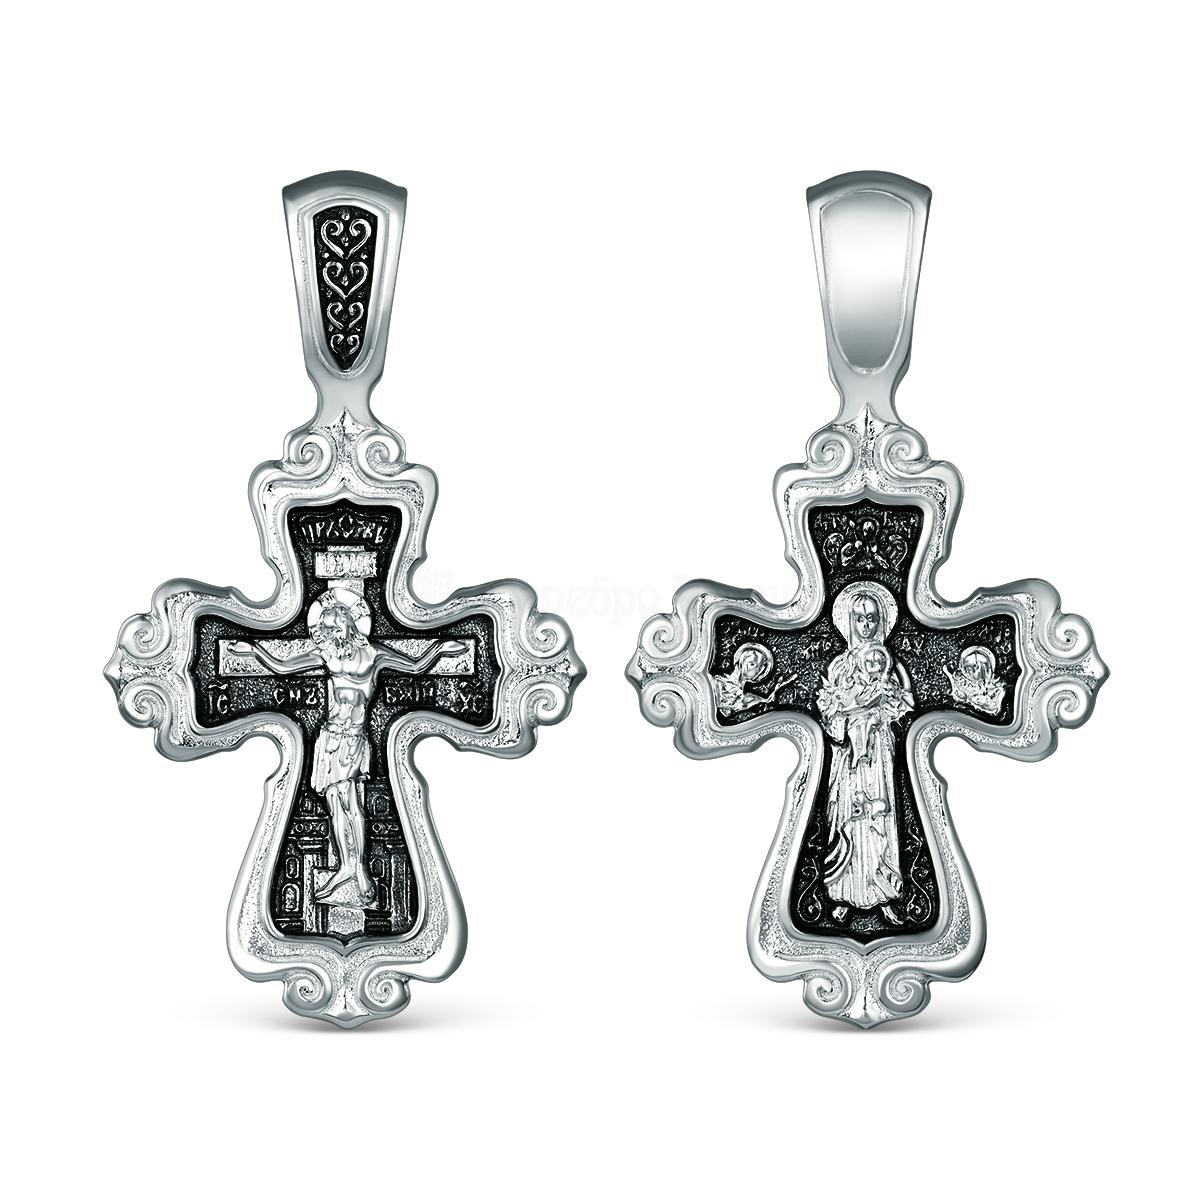 Крест двусторонний из чернёного серебра - Спаситель, Ангел-Хранитель 3,1 см Г-16чч Г-16чч